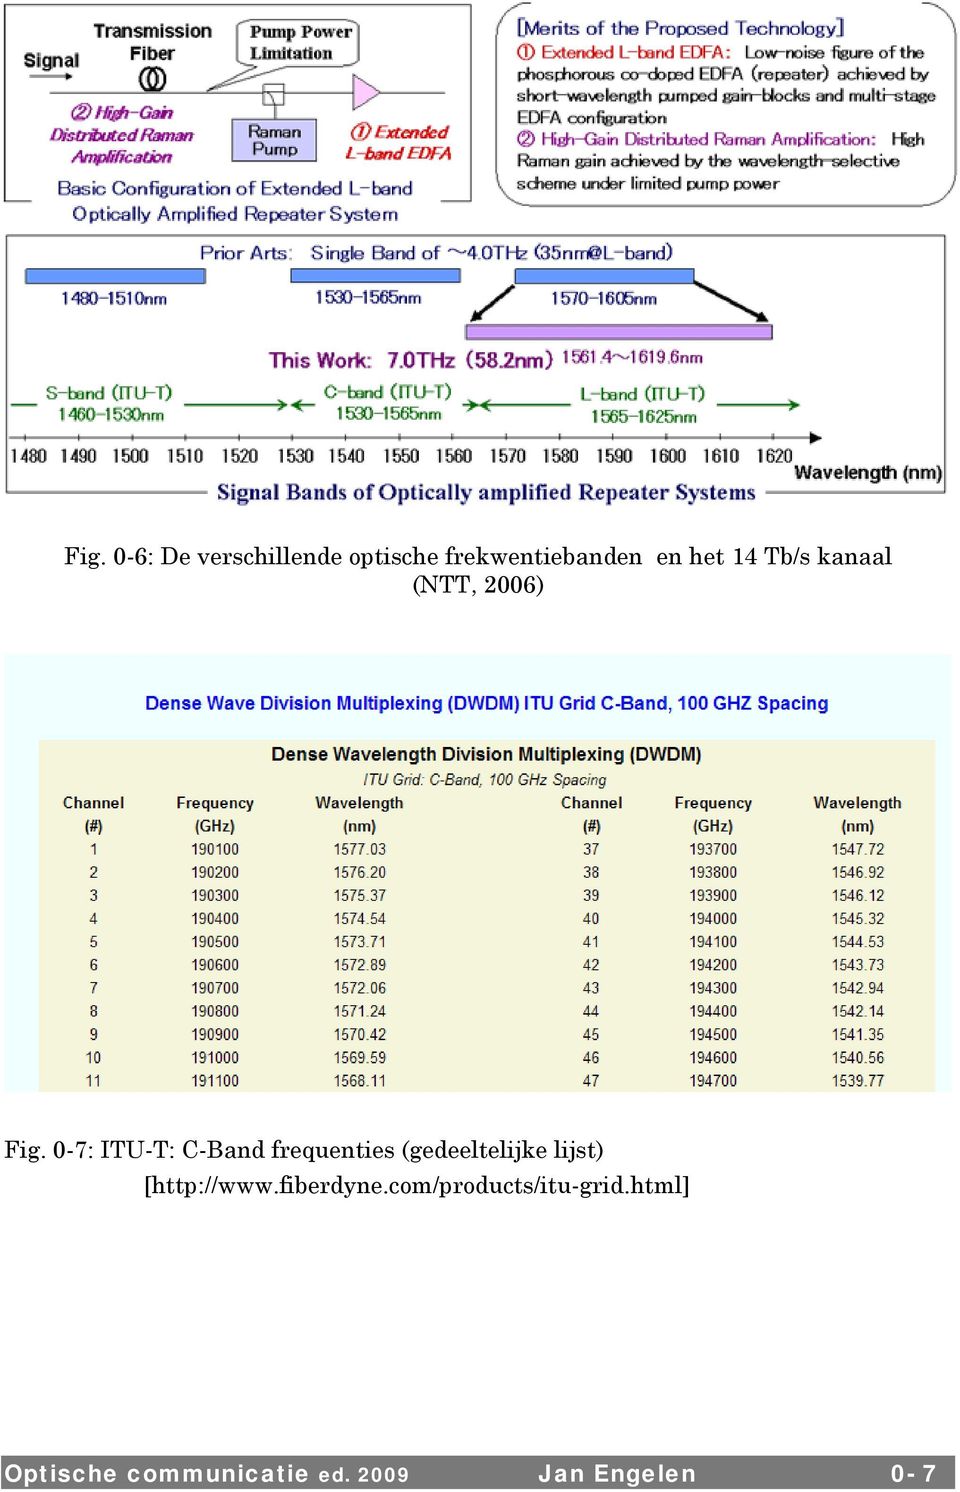 0-7: ITU-T: C-Band frequenties (gedeeltelijke lijst)